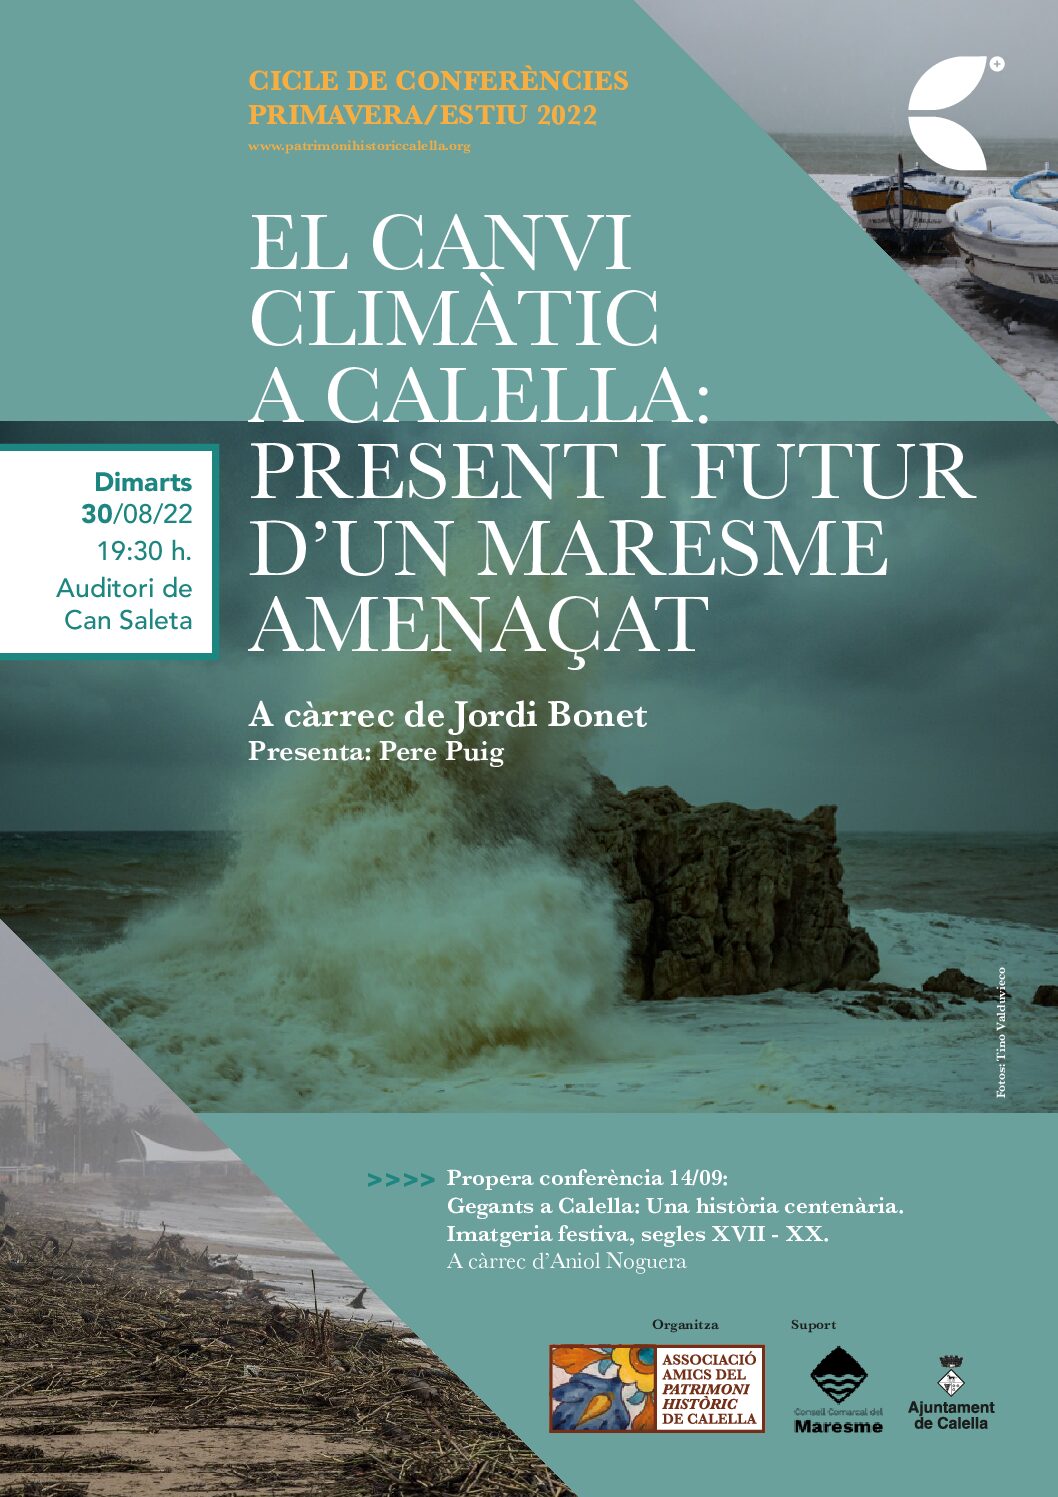 Conferència “El canvi climàtic a Calella: Present i futur d’un Maresme amenaçat”, per Jordi Bonet